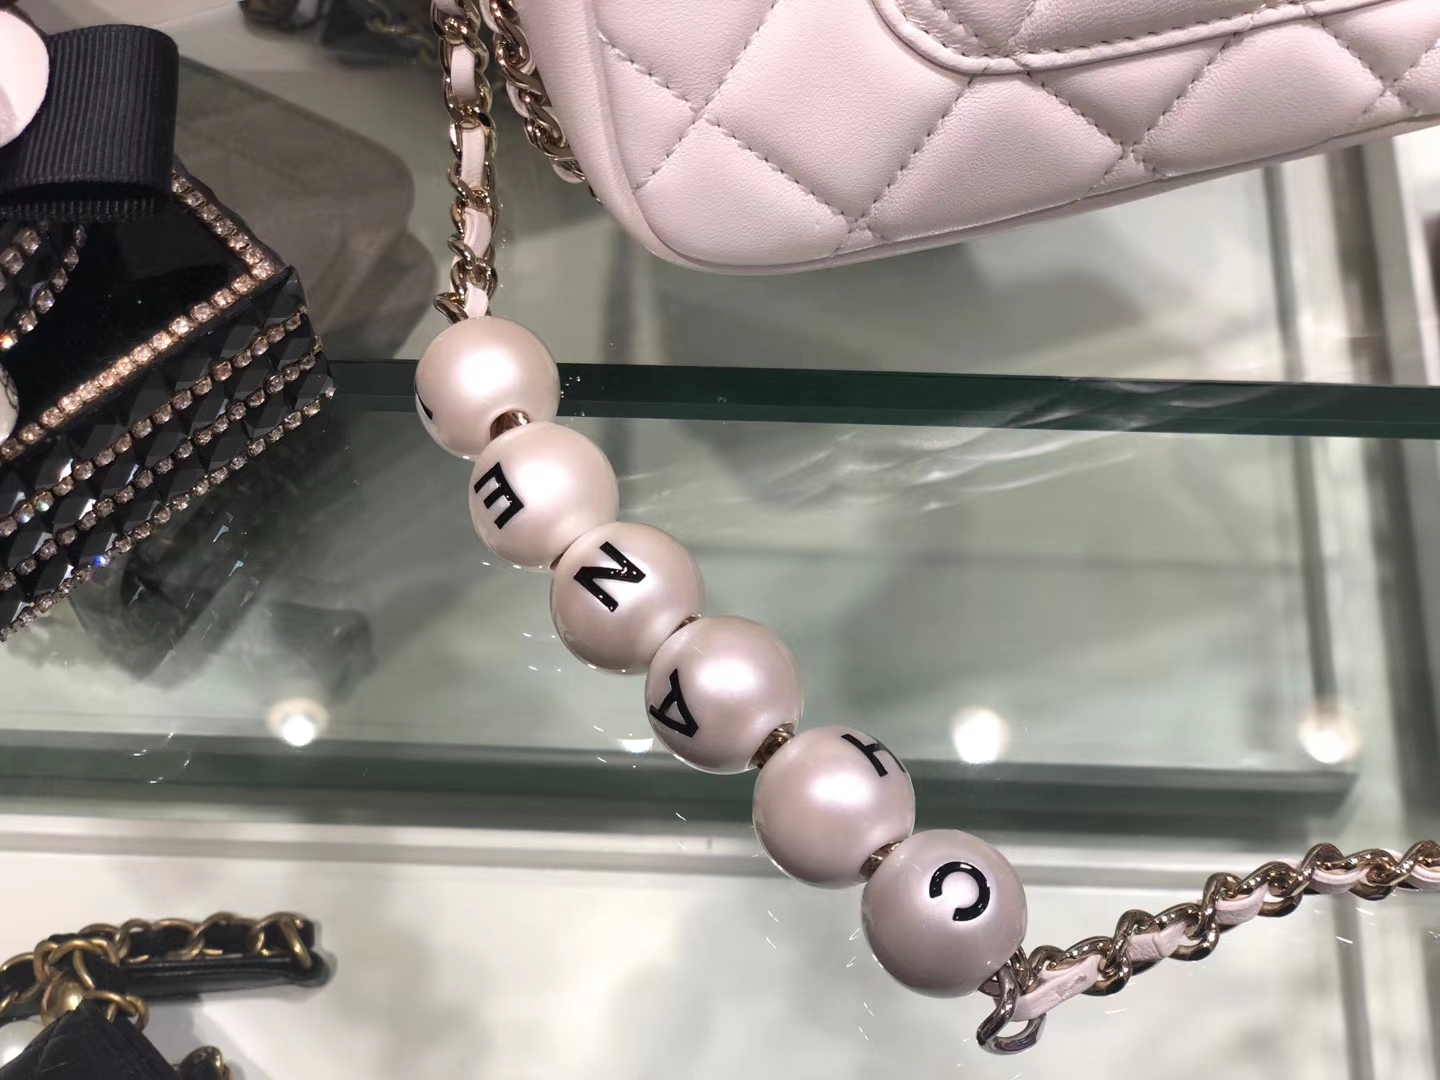 Chanel（香奈儿）2020 新款 珍珠包 超级仙女 长度可调节 白色 金扣